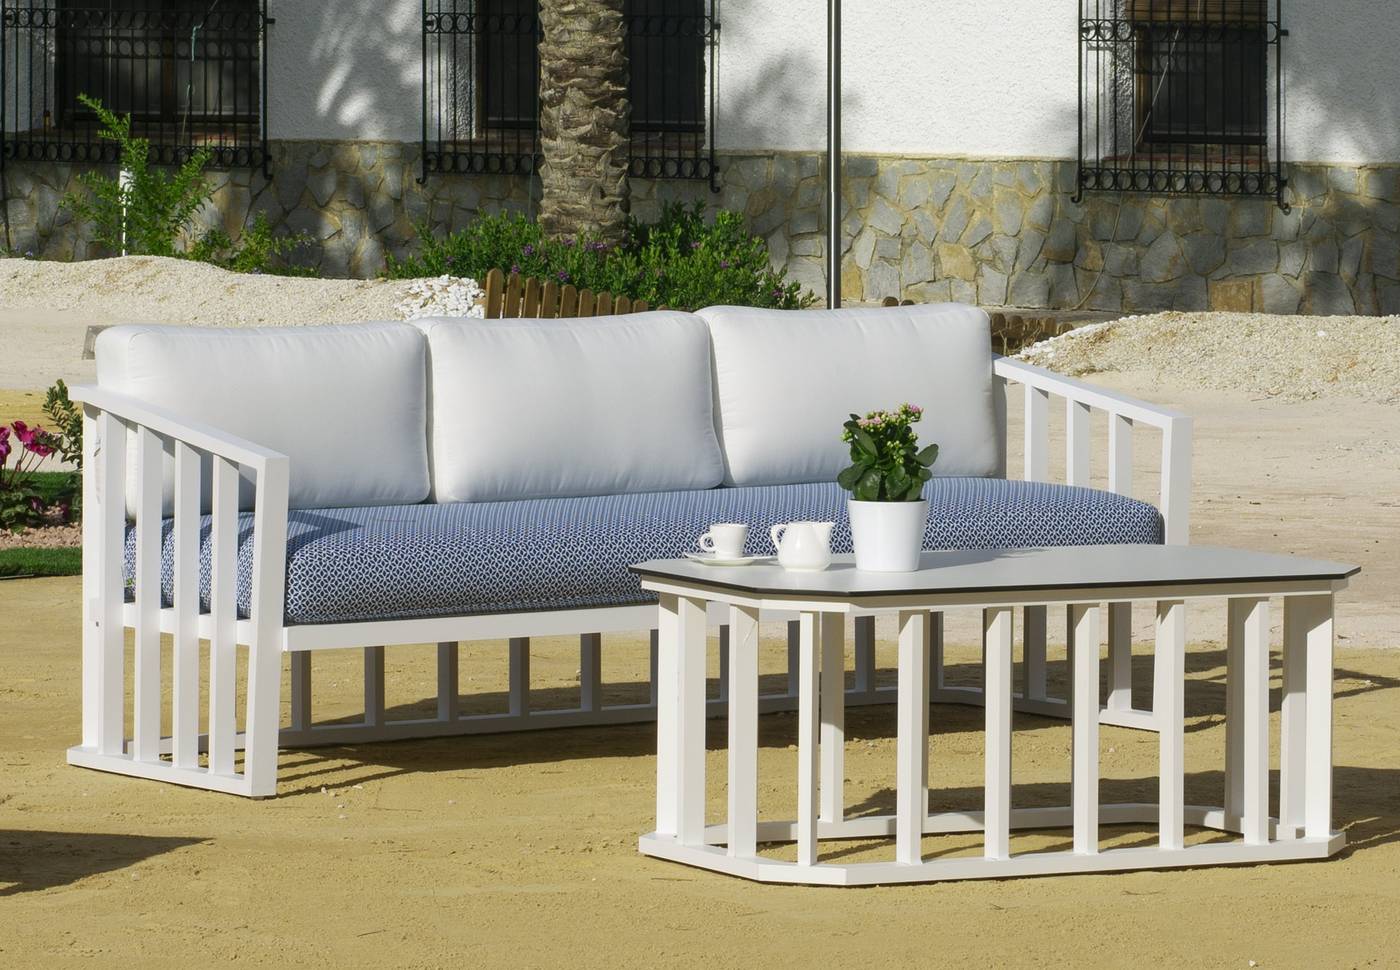 Set Aluminio Birmania-8 - Conjunto confort aluminio: 1 sofá 3 plazas + 2 sillones + 1 mesa de centro. Disponible en color blanco o antracita.